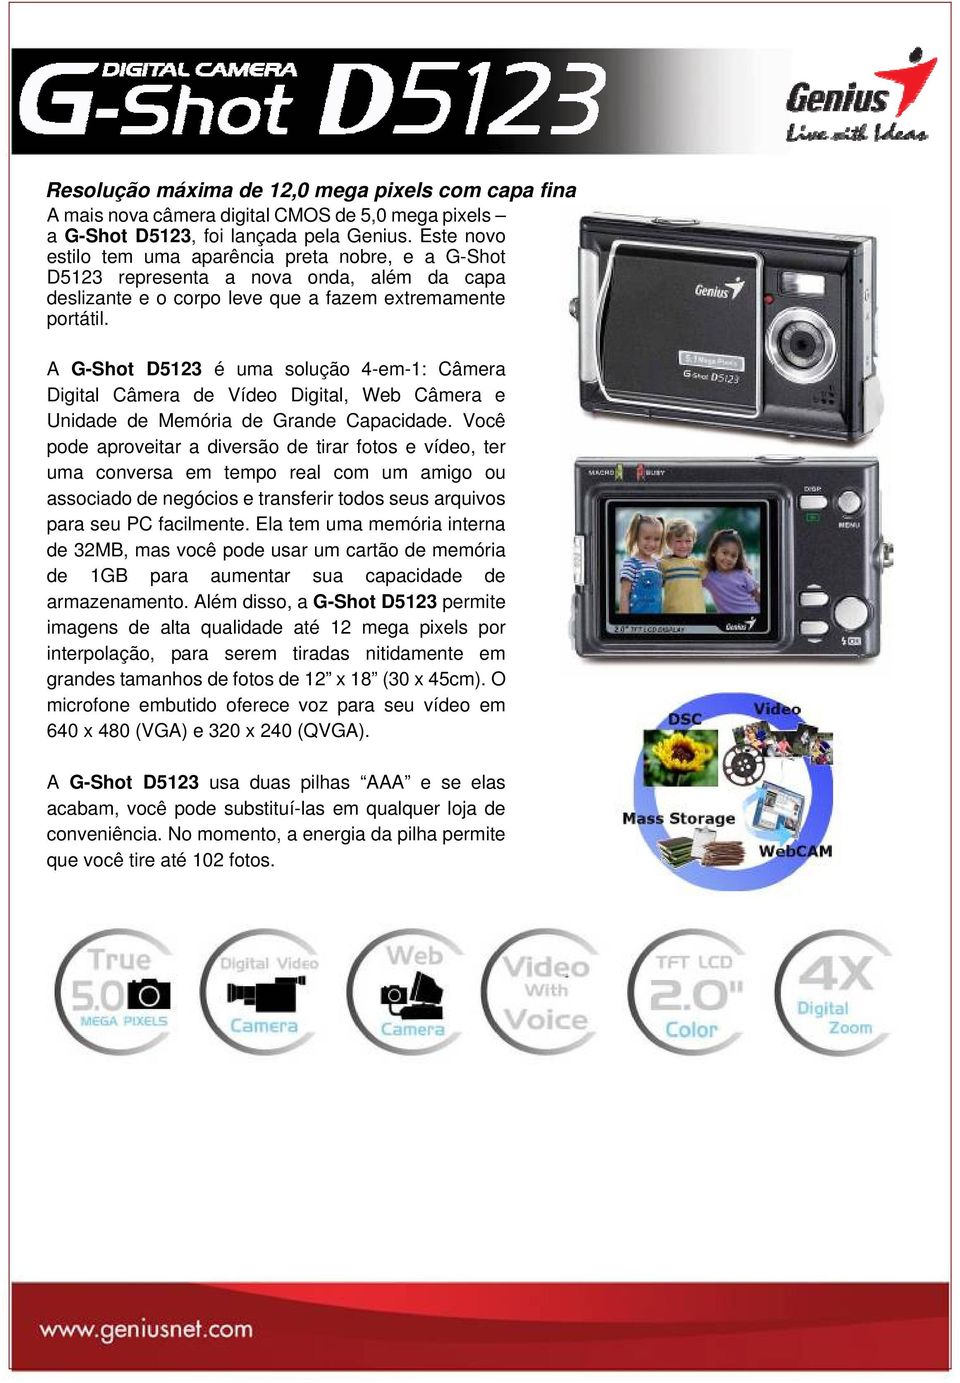 A G-Shot D5123 é uma solução 4-em-1: Câmera Digital Câmera de Vídeo Digital, Web Câmera e Unidade de Memória de Grande Capacidade.